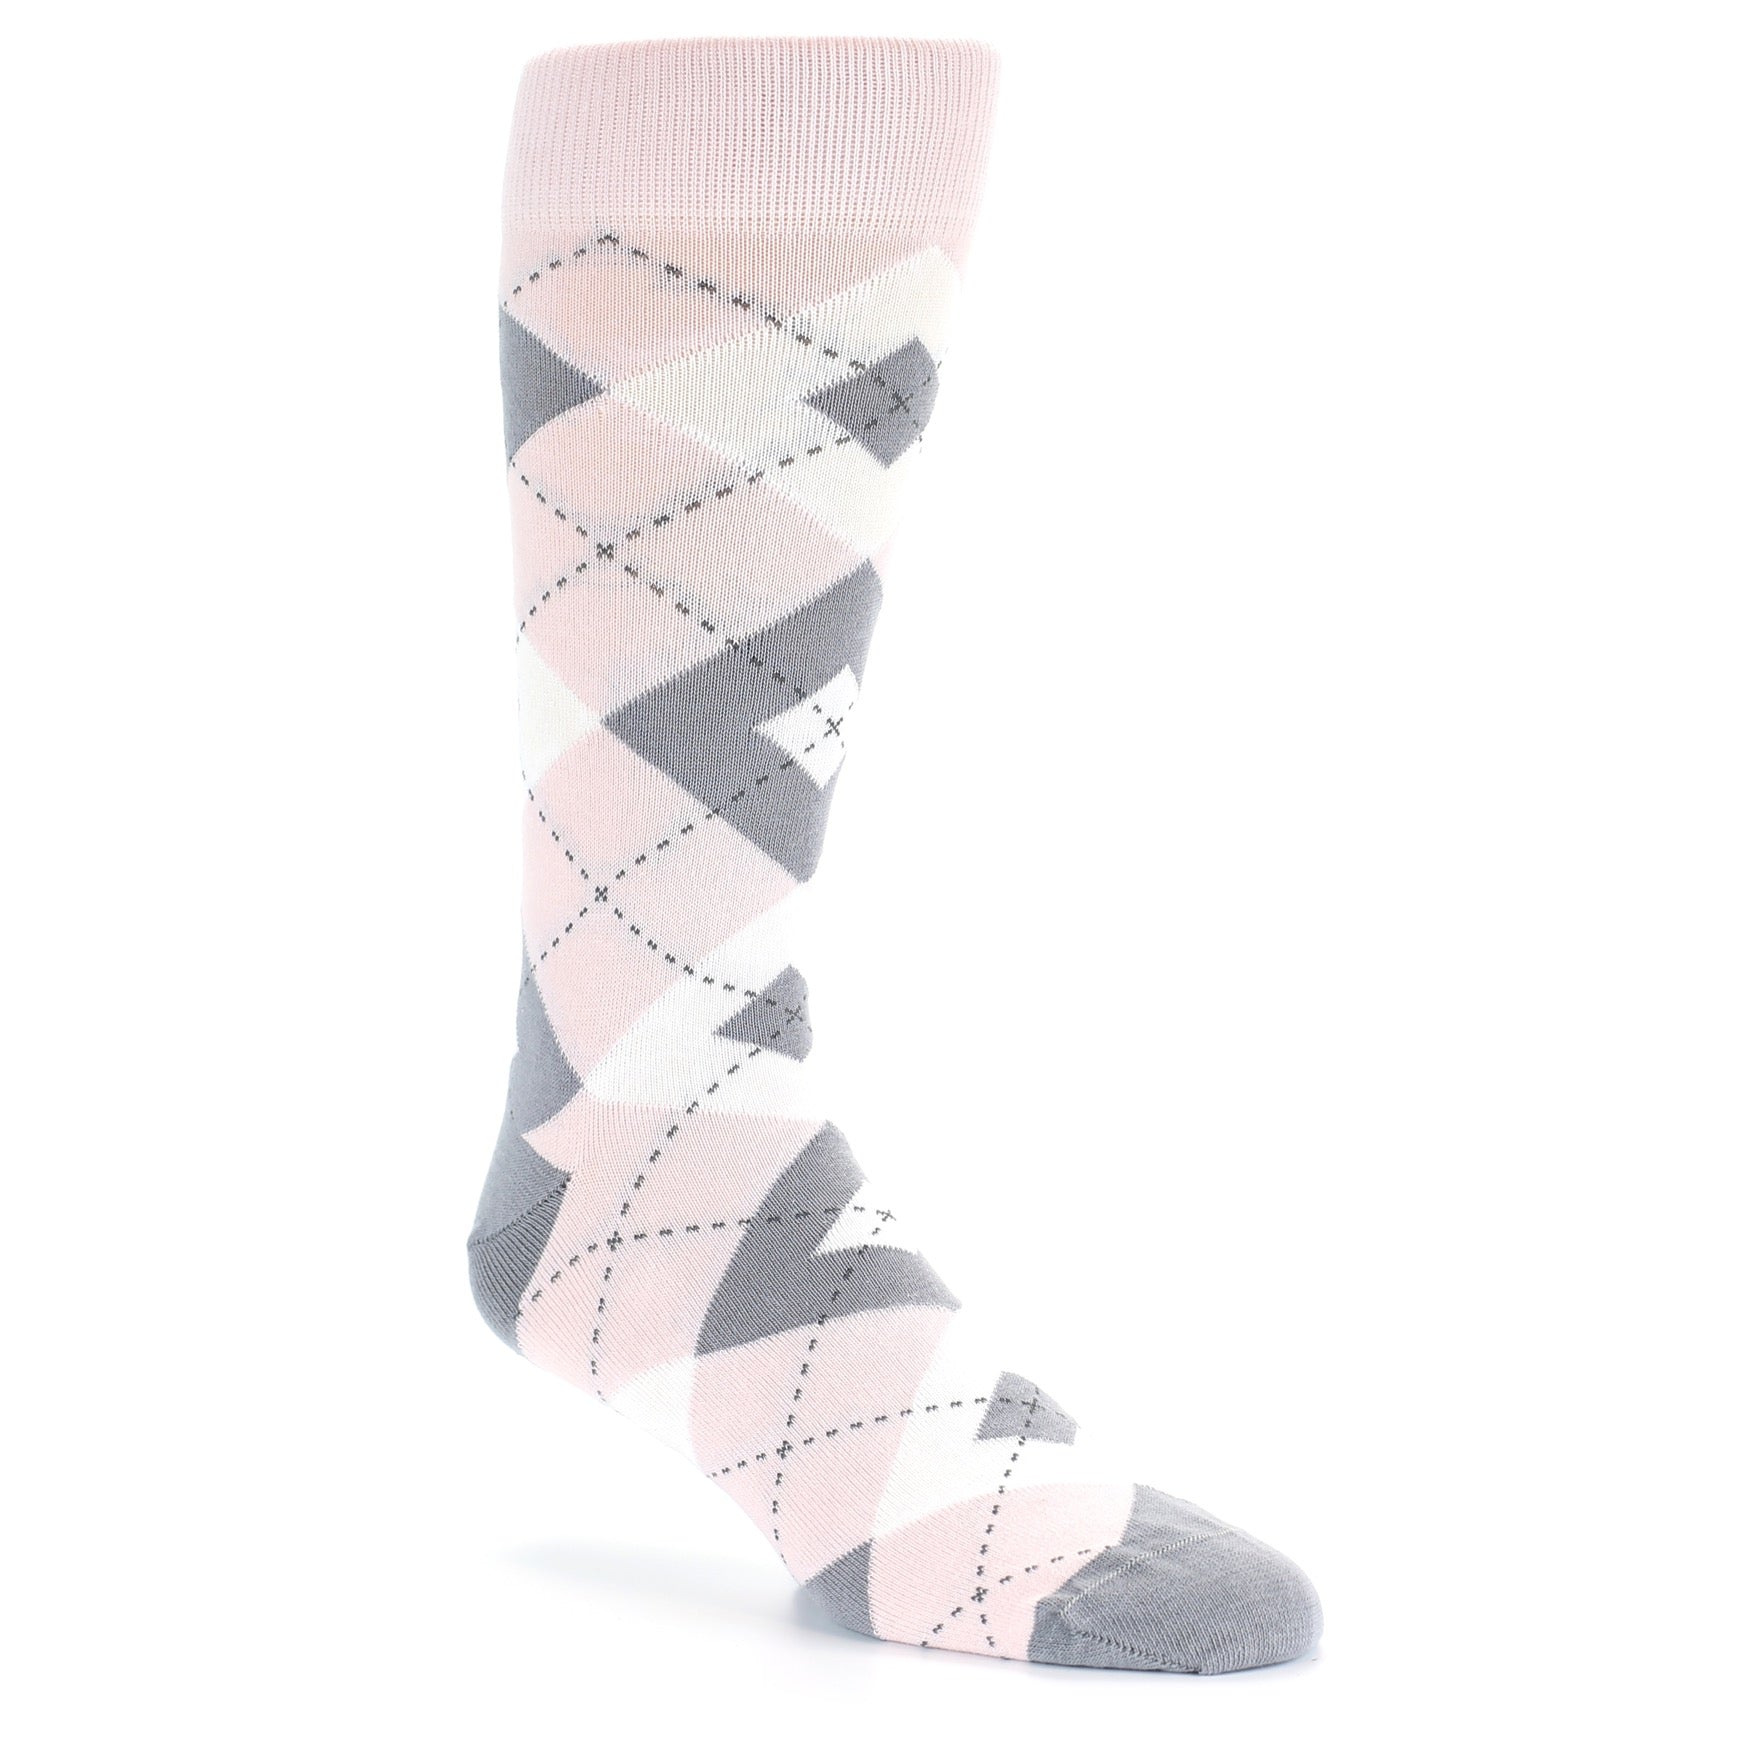 Men's Blush Pink And Gray Argyle Socks Shop At TieMart